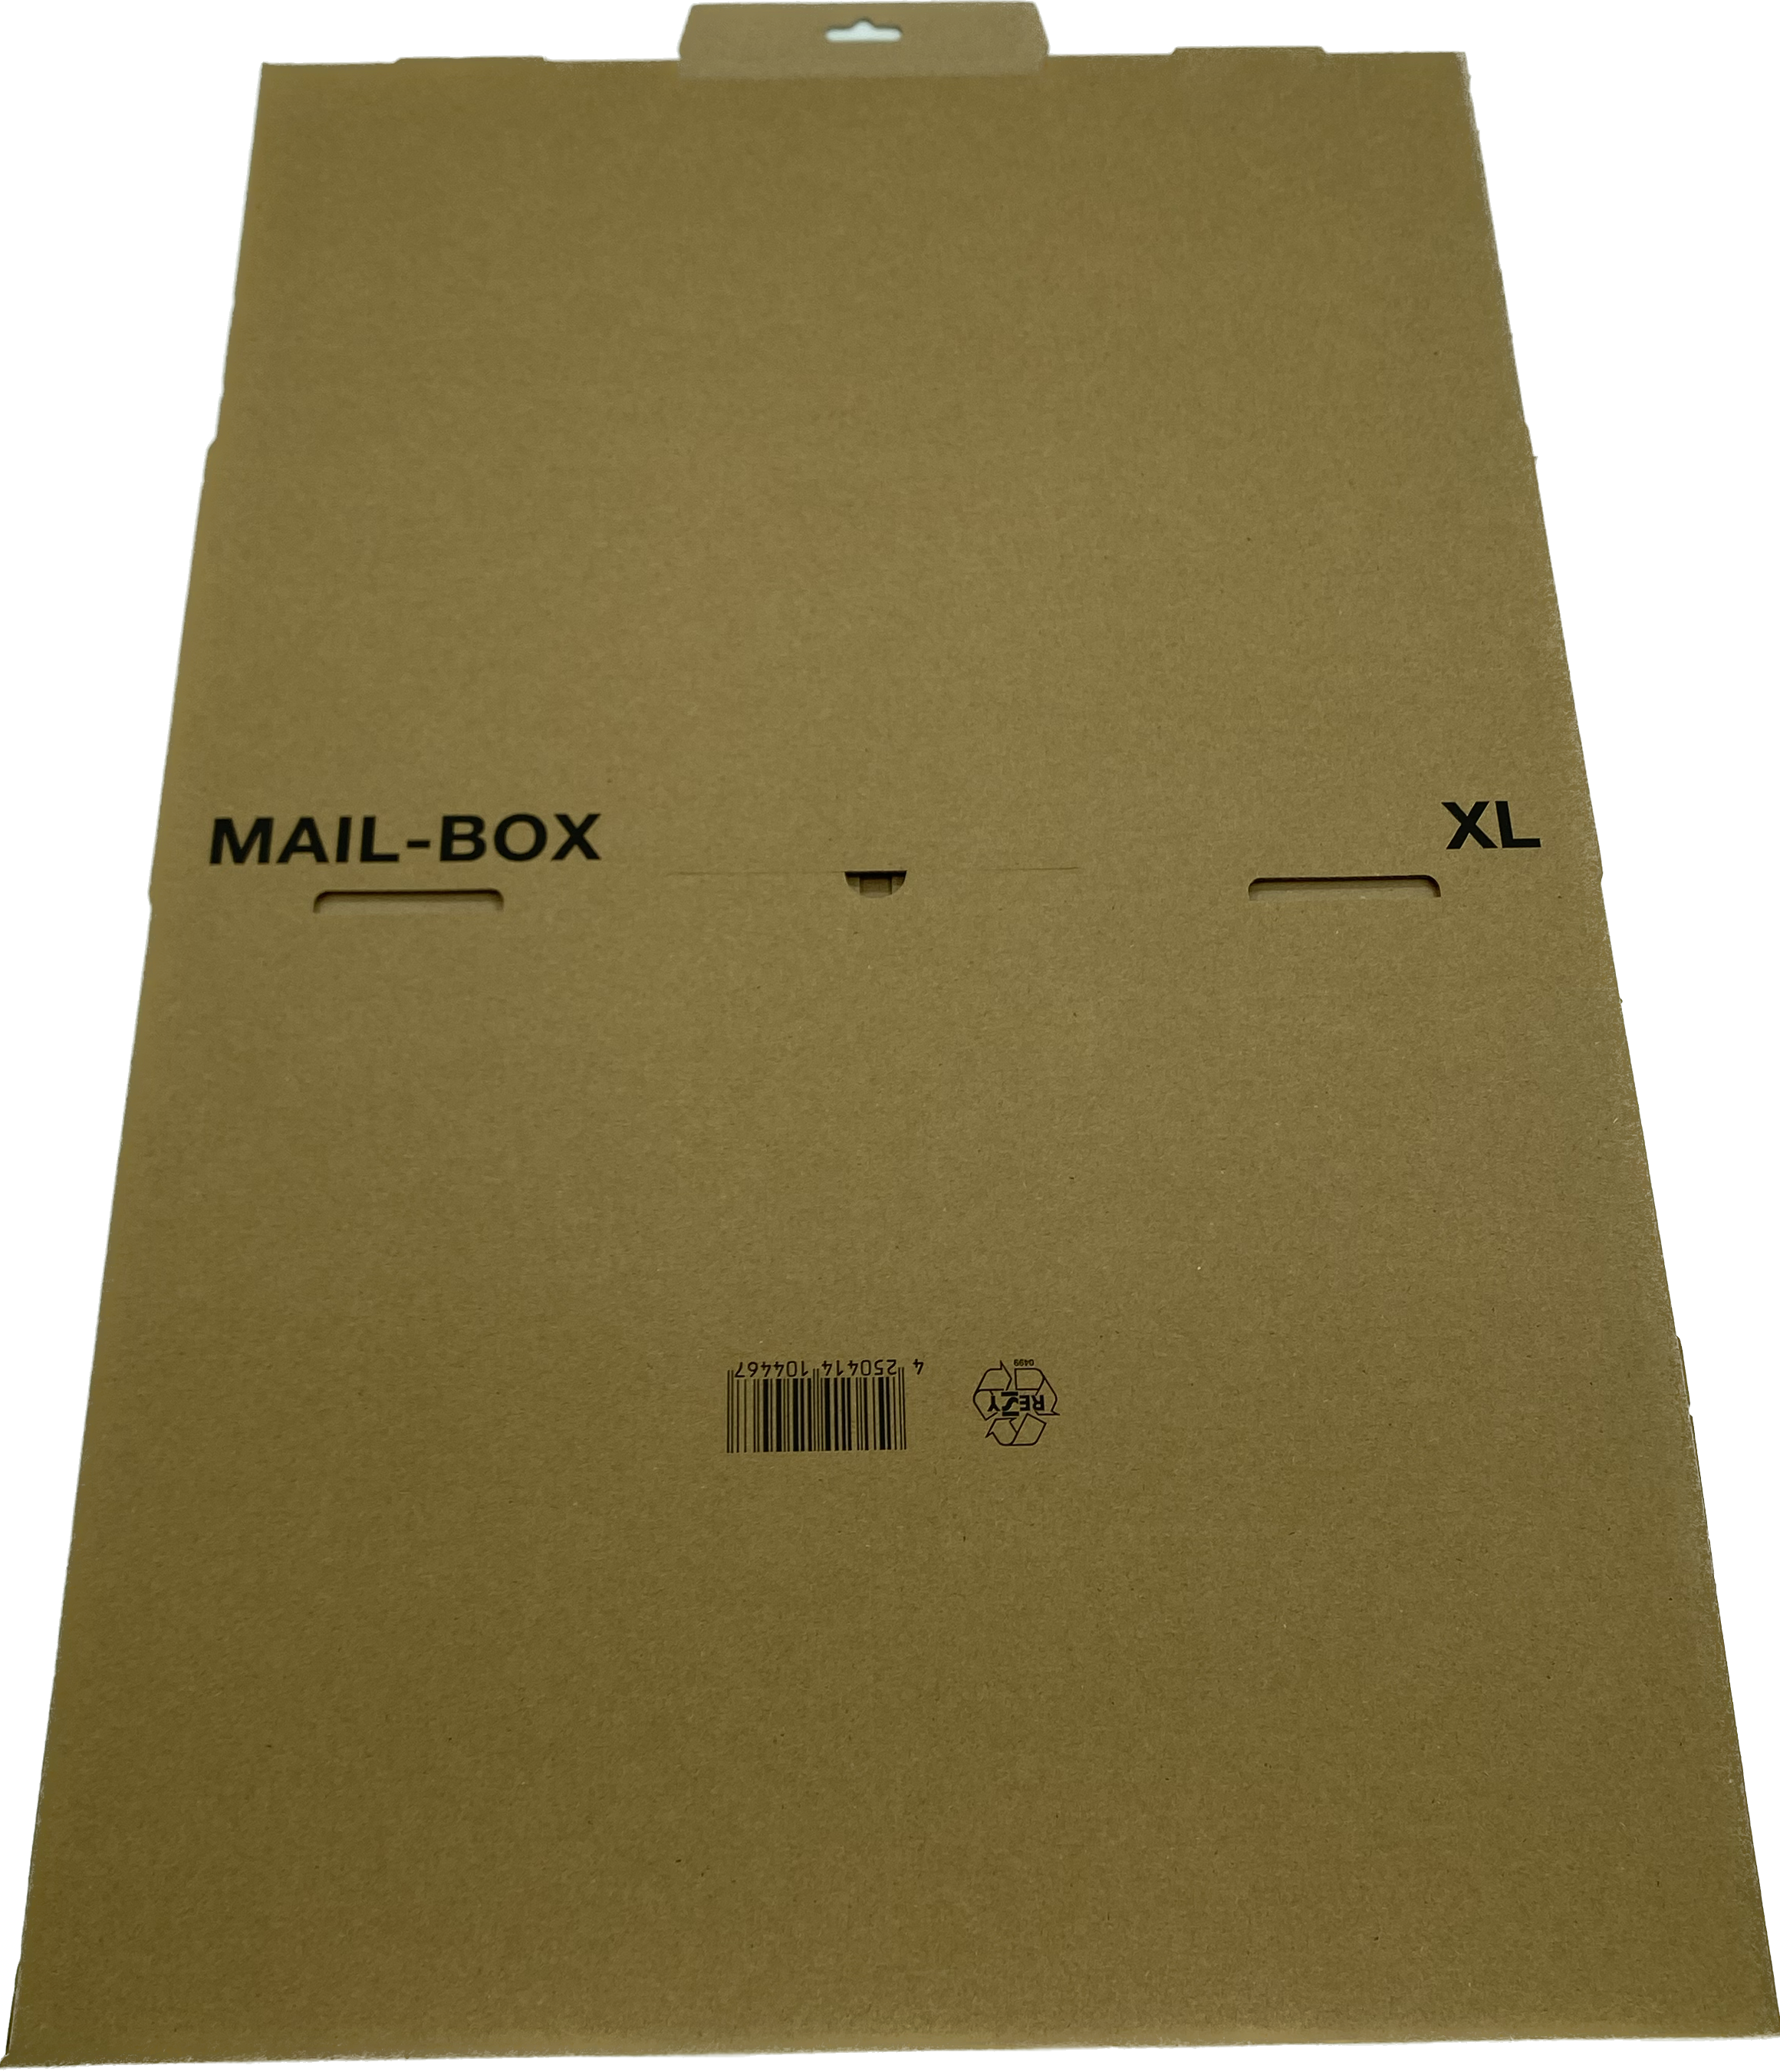 Mailbox-Karton XL, 460x333x174 mm, braun